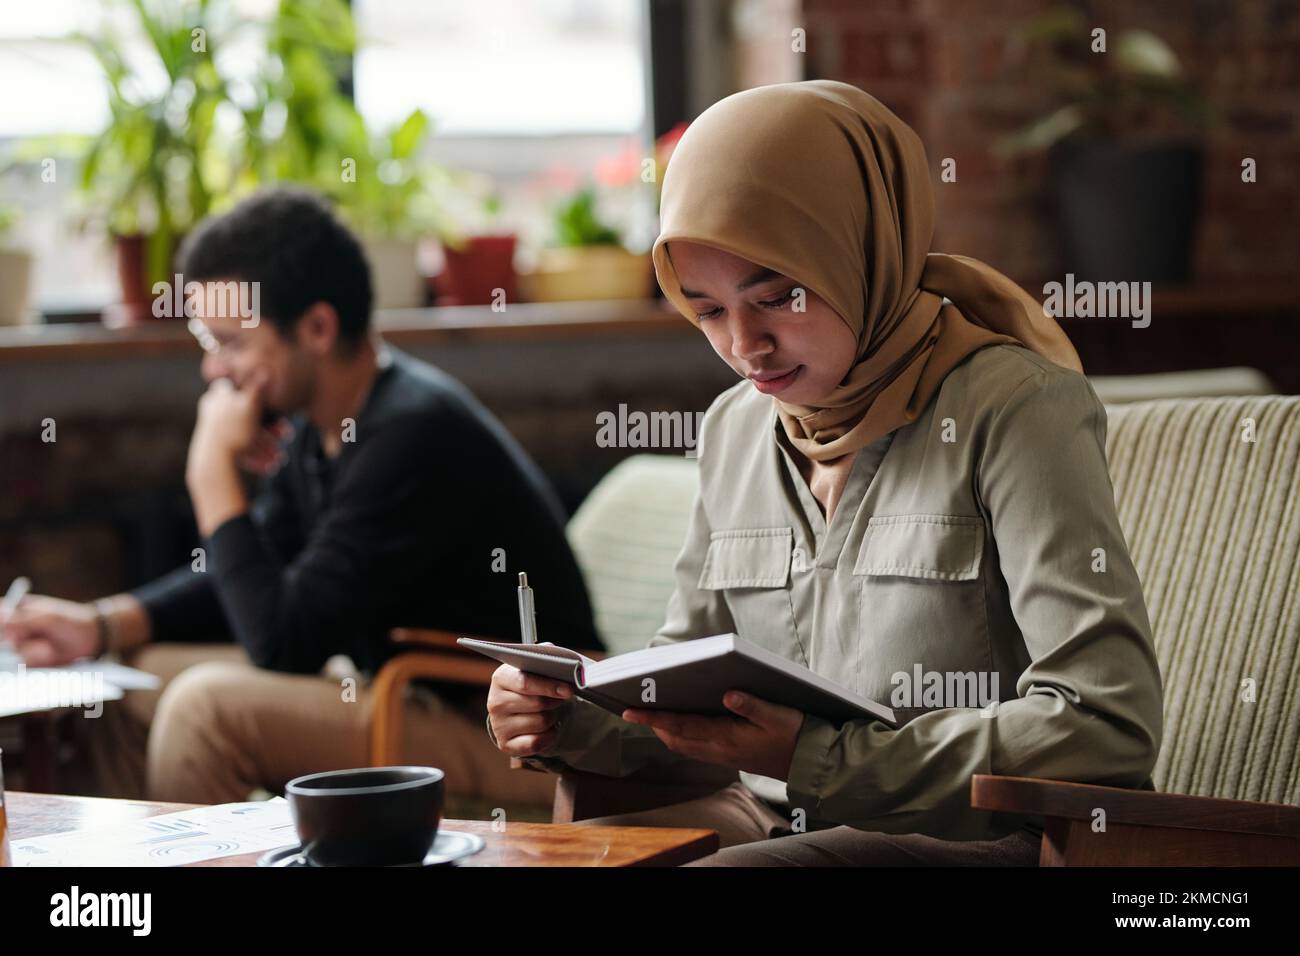 Junge, seriöse muslimische Geschäftsfrau im Hijab, hält ein offenes Notizbuch vor sich und durchsucht Notizen am Arbeitsplatz Stockfoto